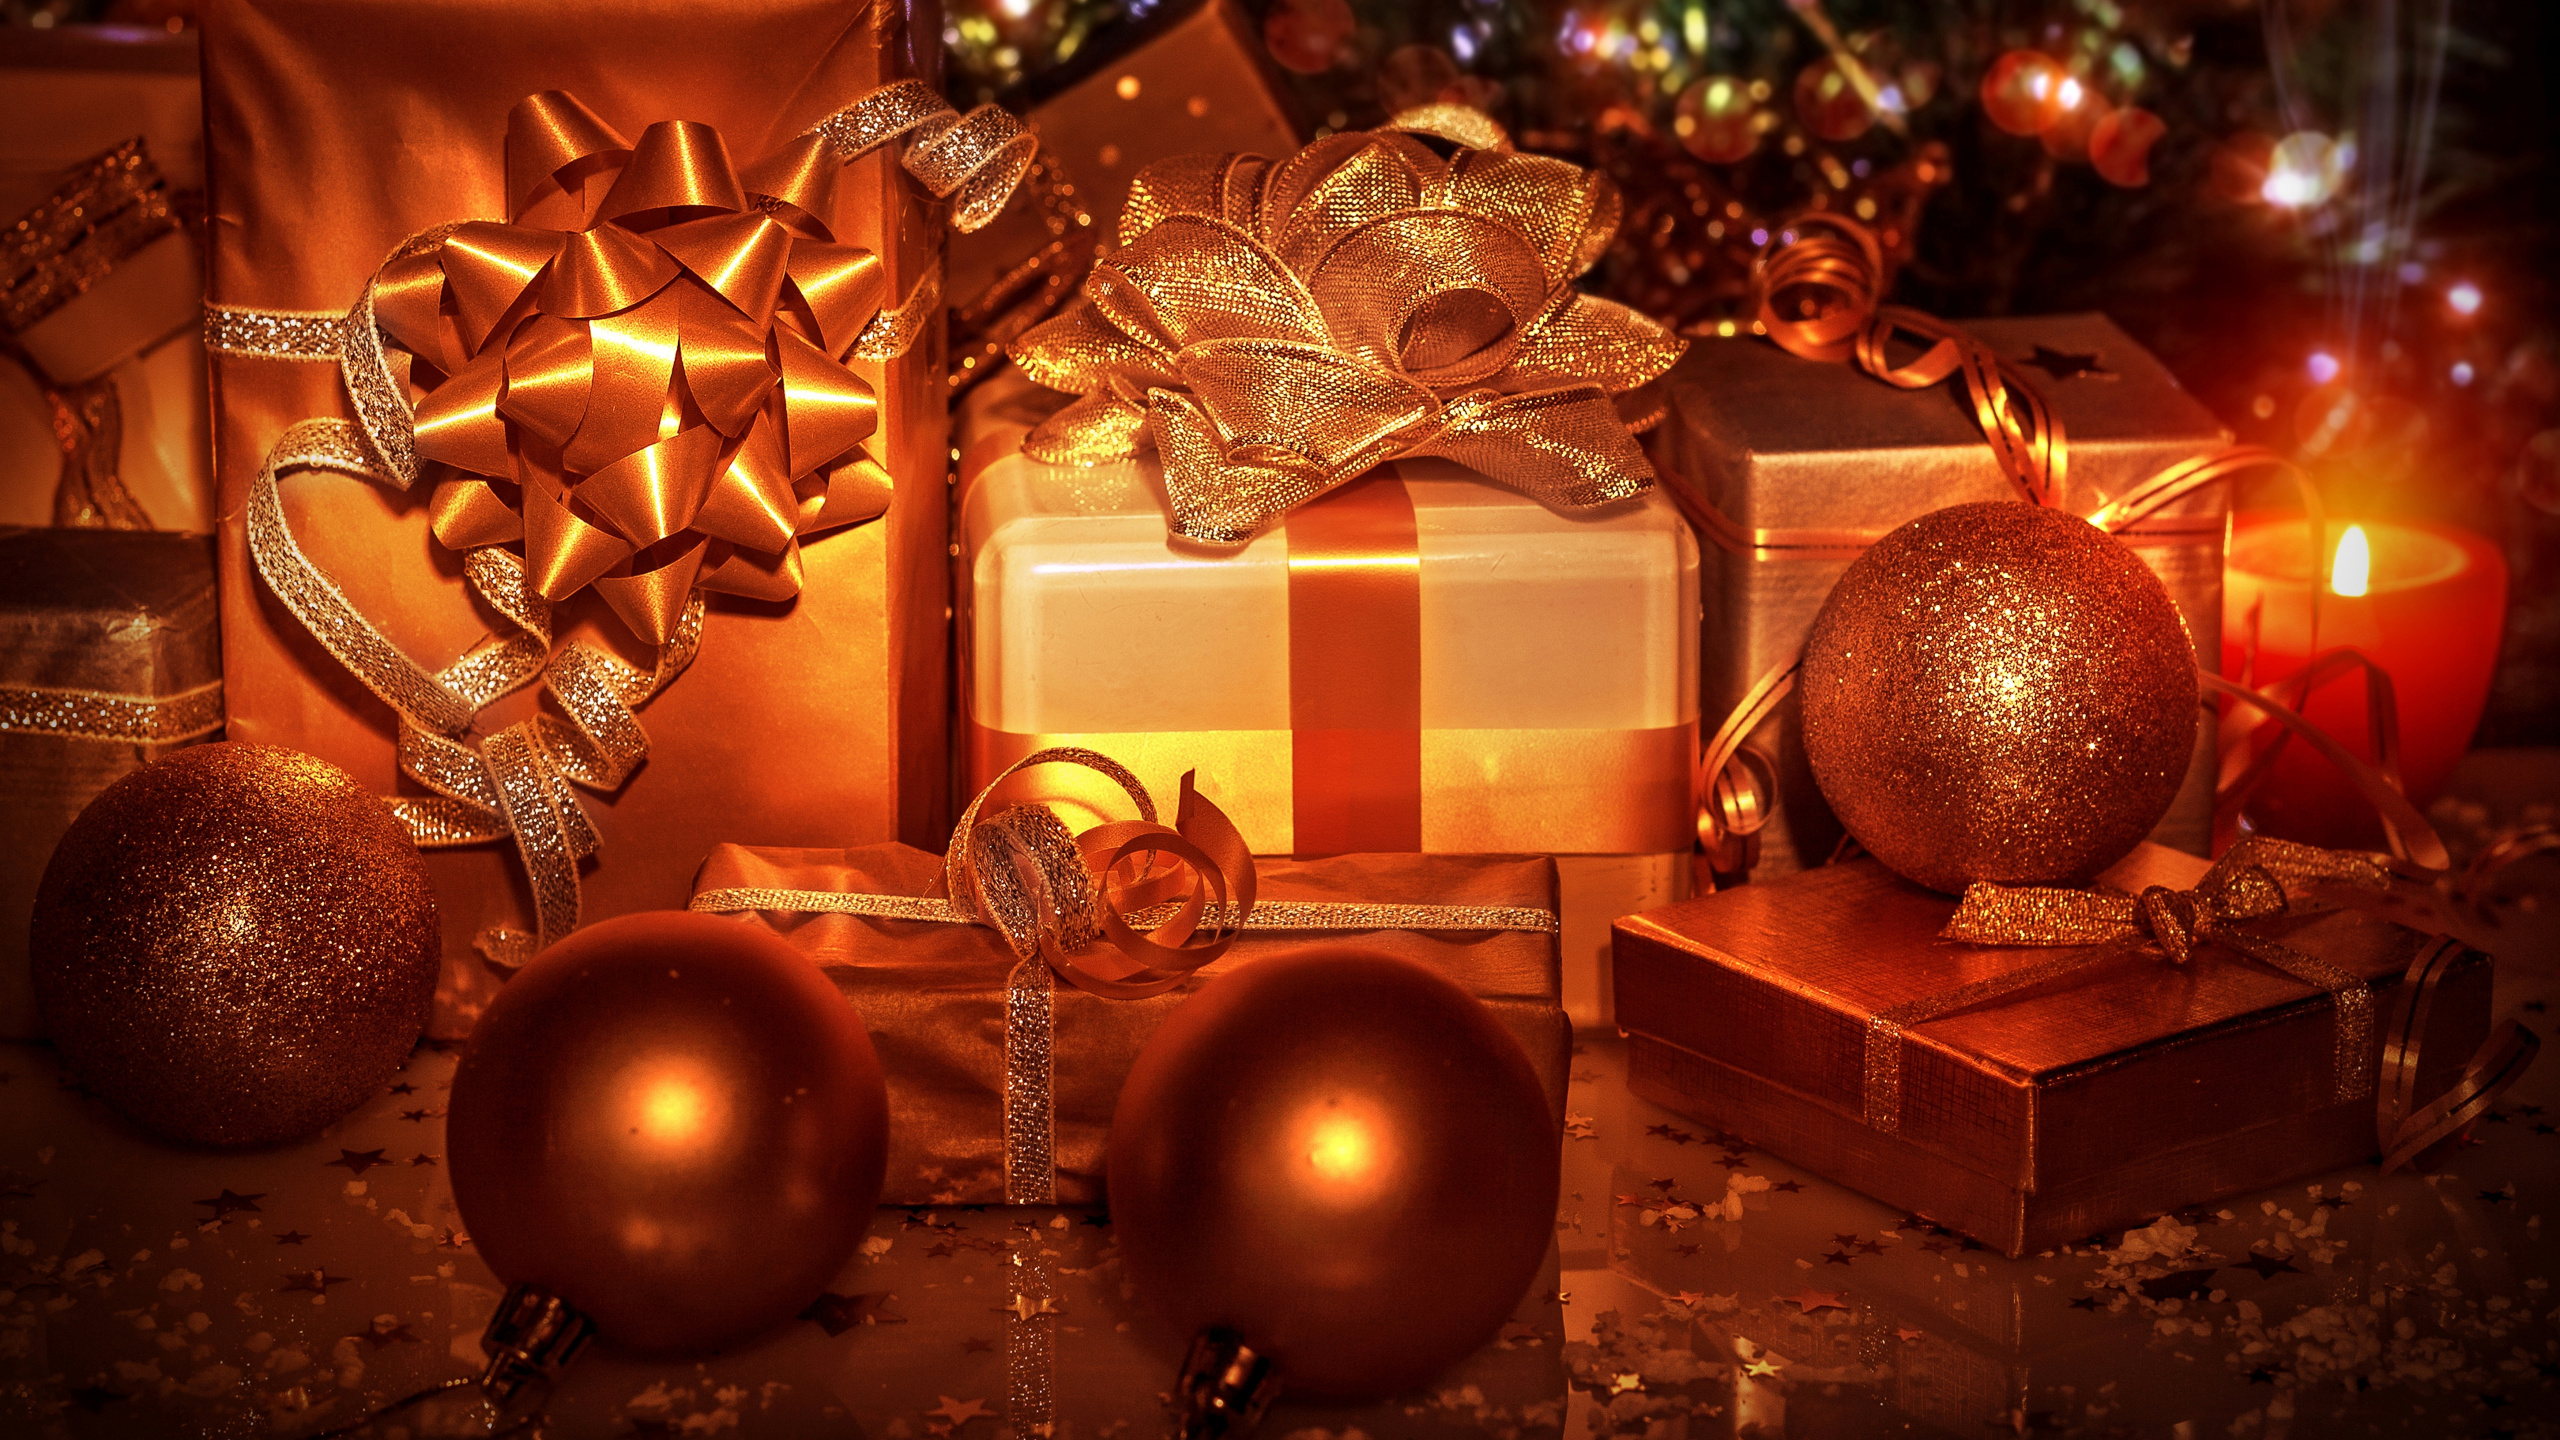 圣诞节那天, 圣诞节的装饰品, 圣诞树, 新的一年, 圣诞装饰 壁纸 2560x1440 允许